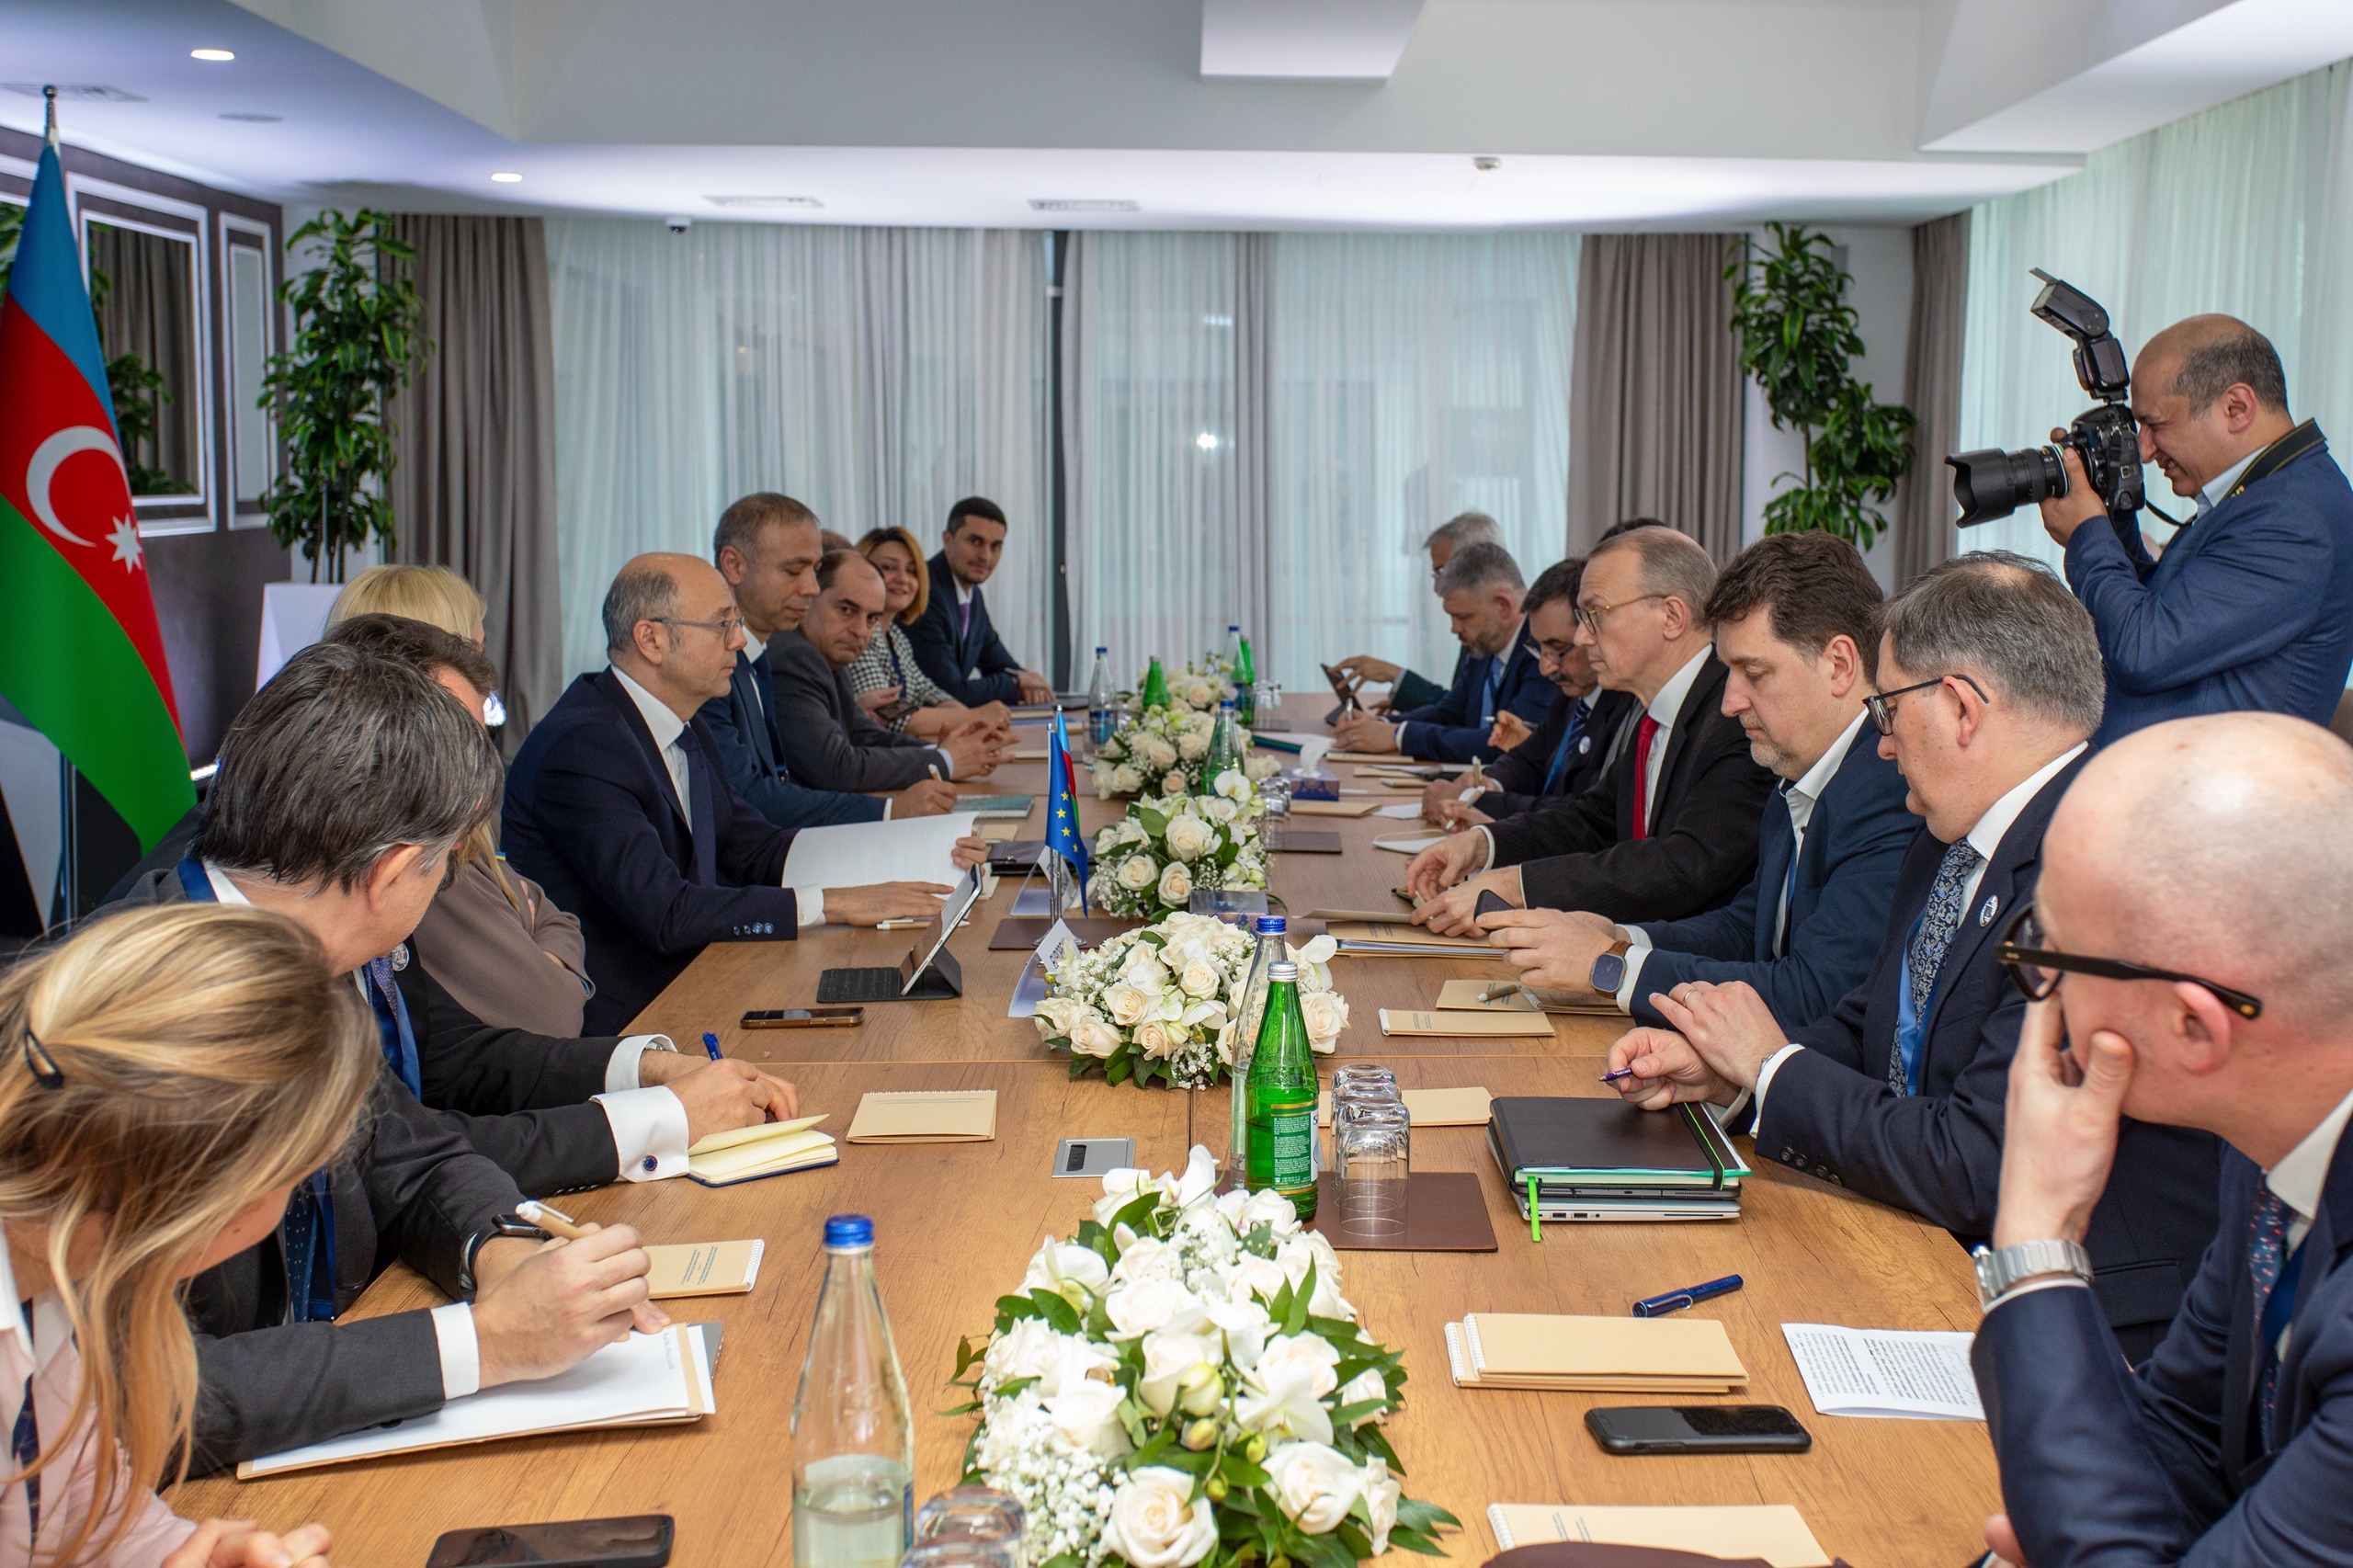 Memorandum of Understanding has been signed between Azerbaijan and WindEurope on wind energy